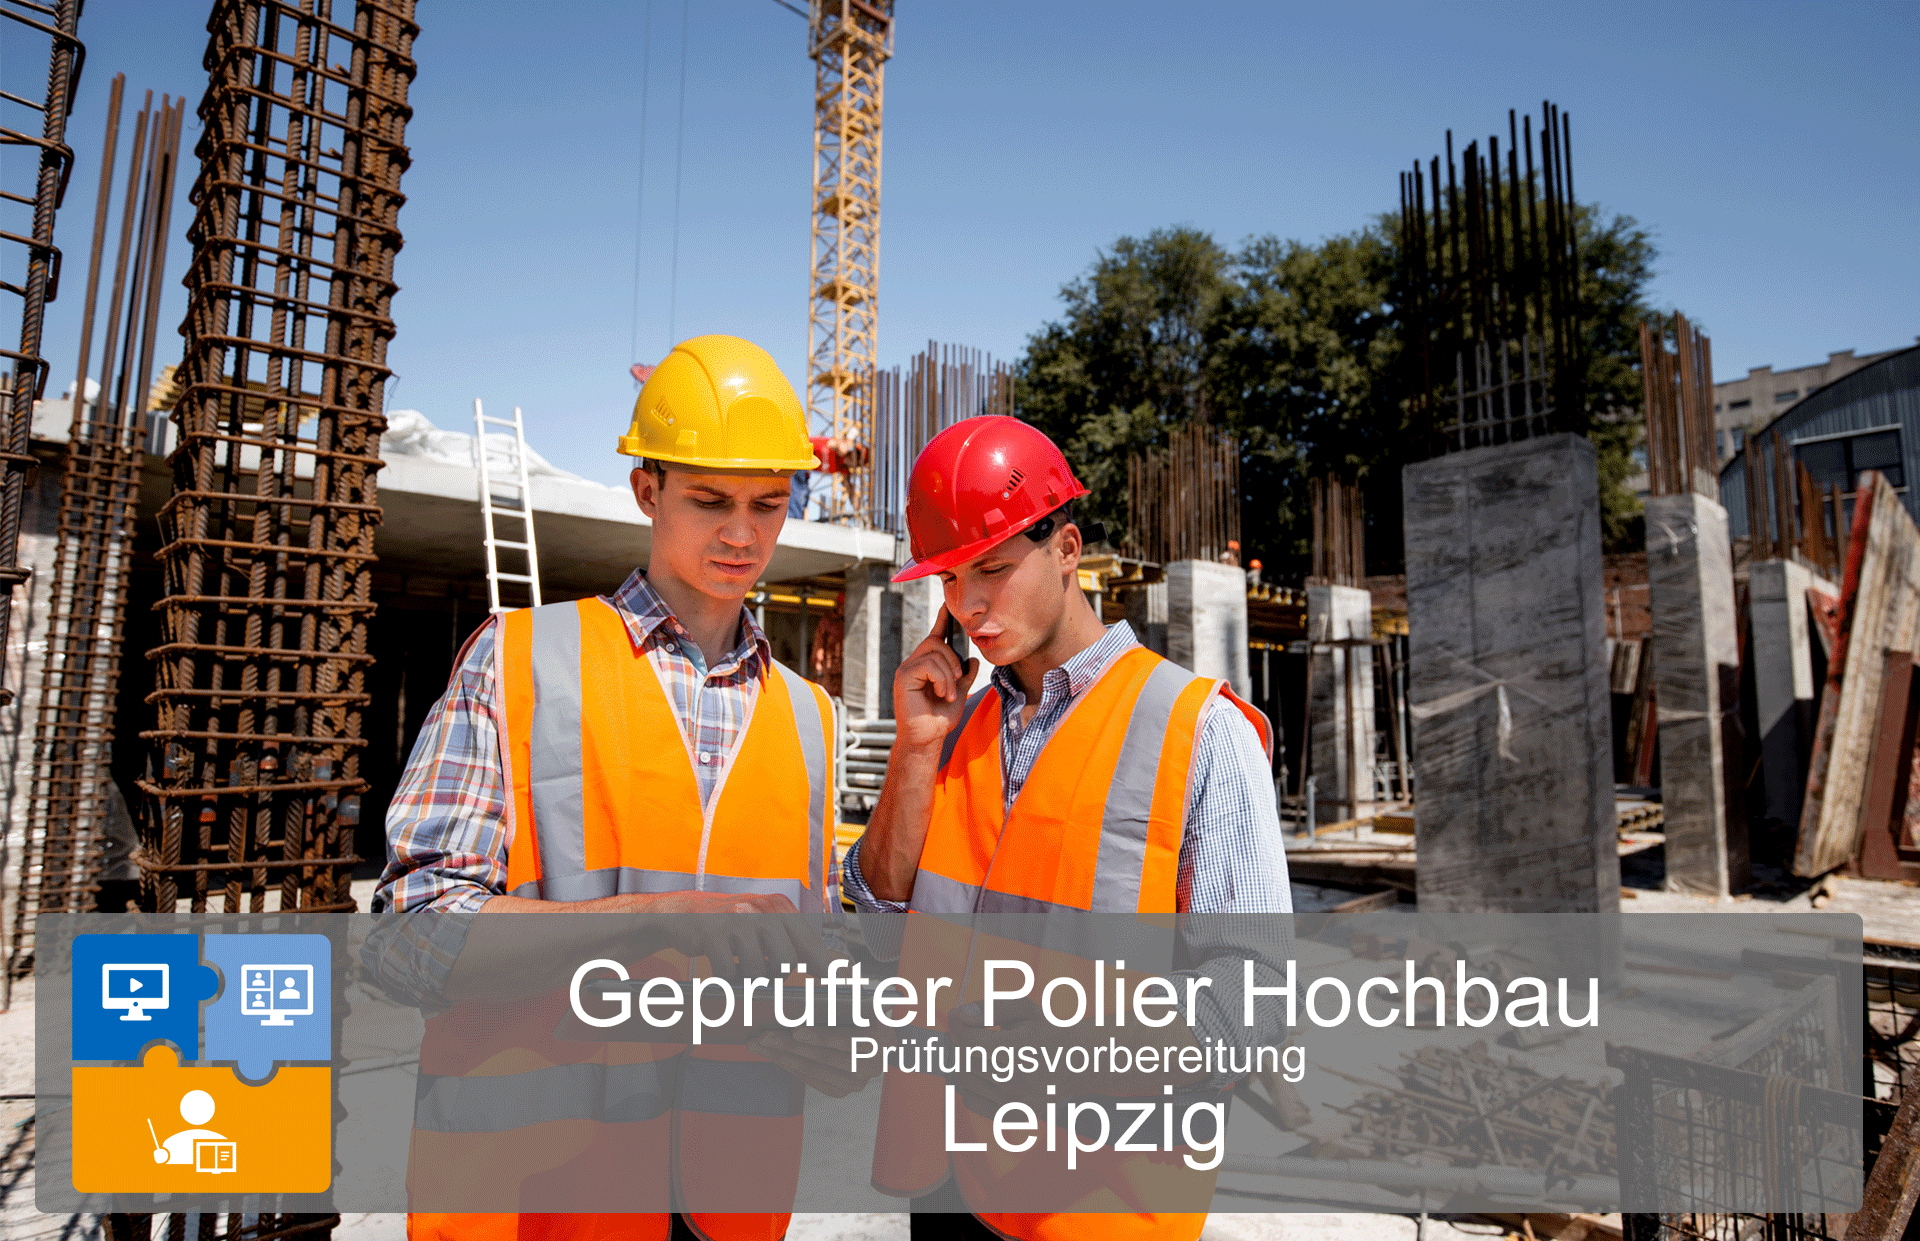 Prüfungsvorbereitung Geprüfter Polier Hochbau (Leipzig) course image